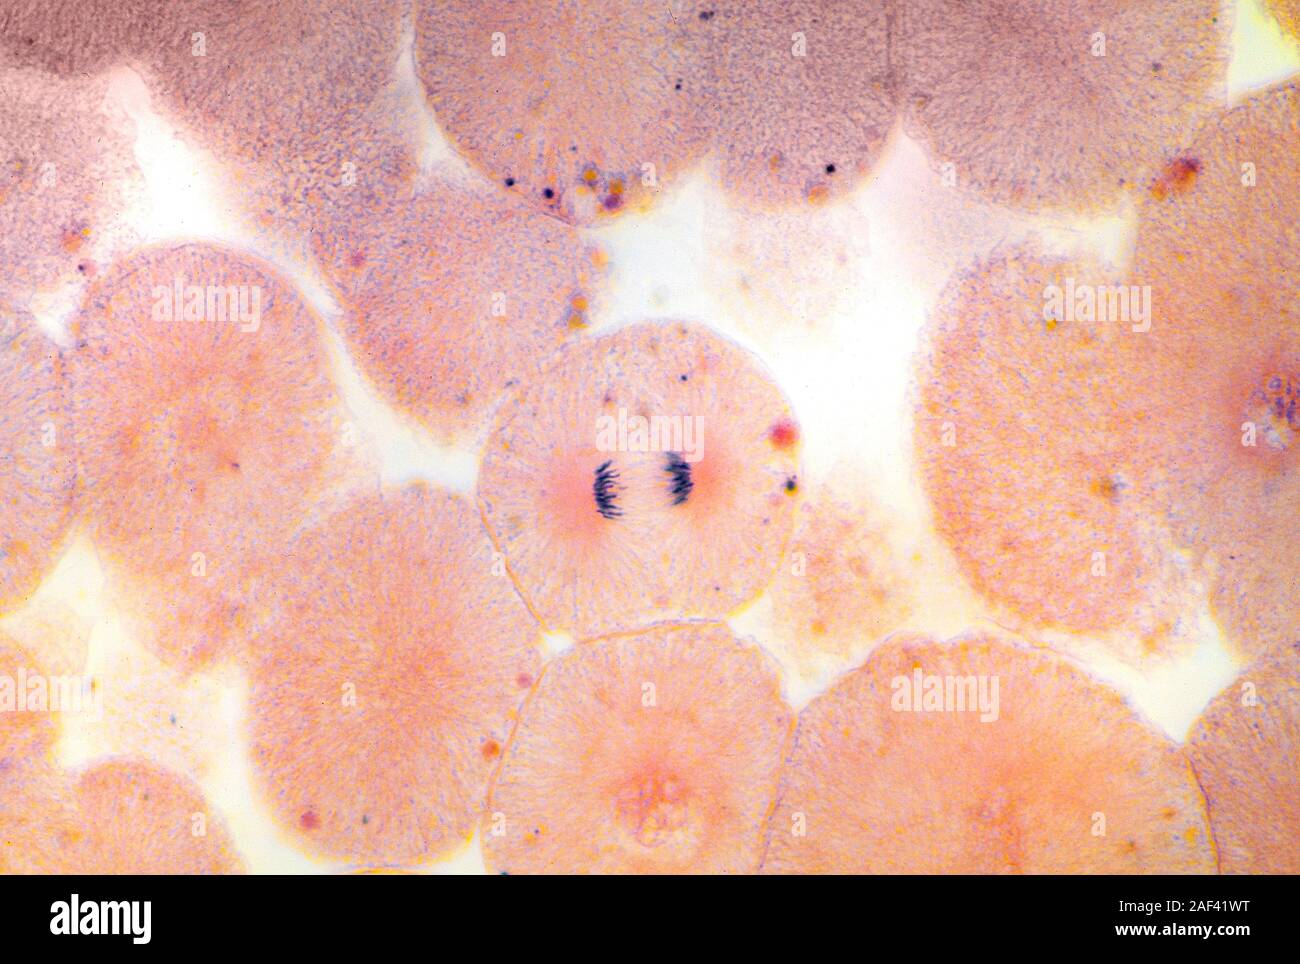 La cellule animale type de chromosomes en mitose montrant groupement avant la division cellulaire Banque D'Images